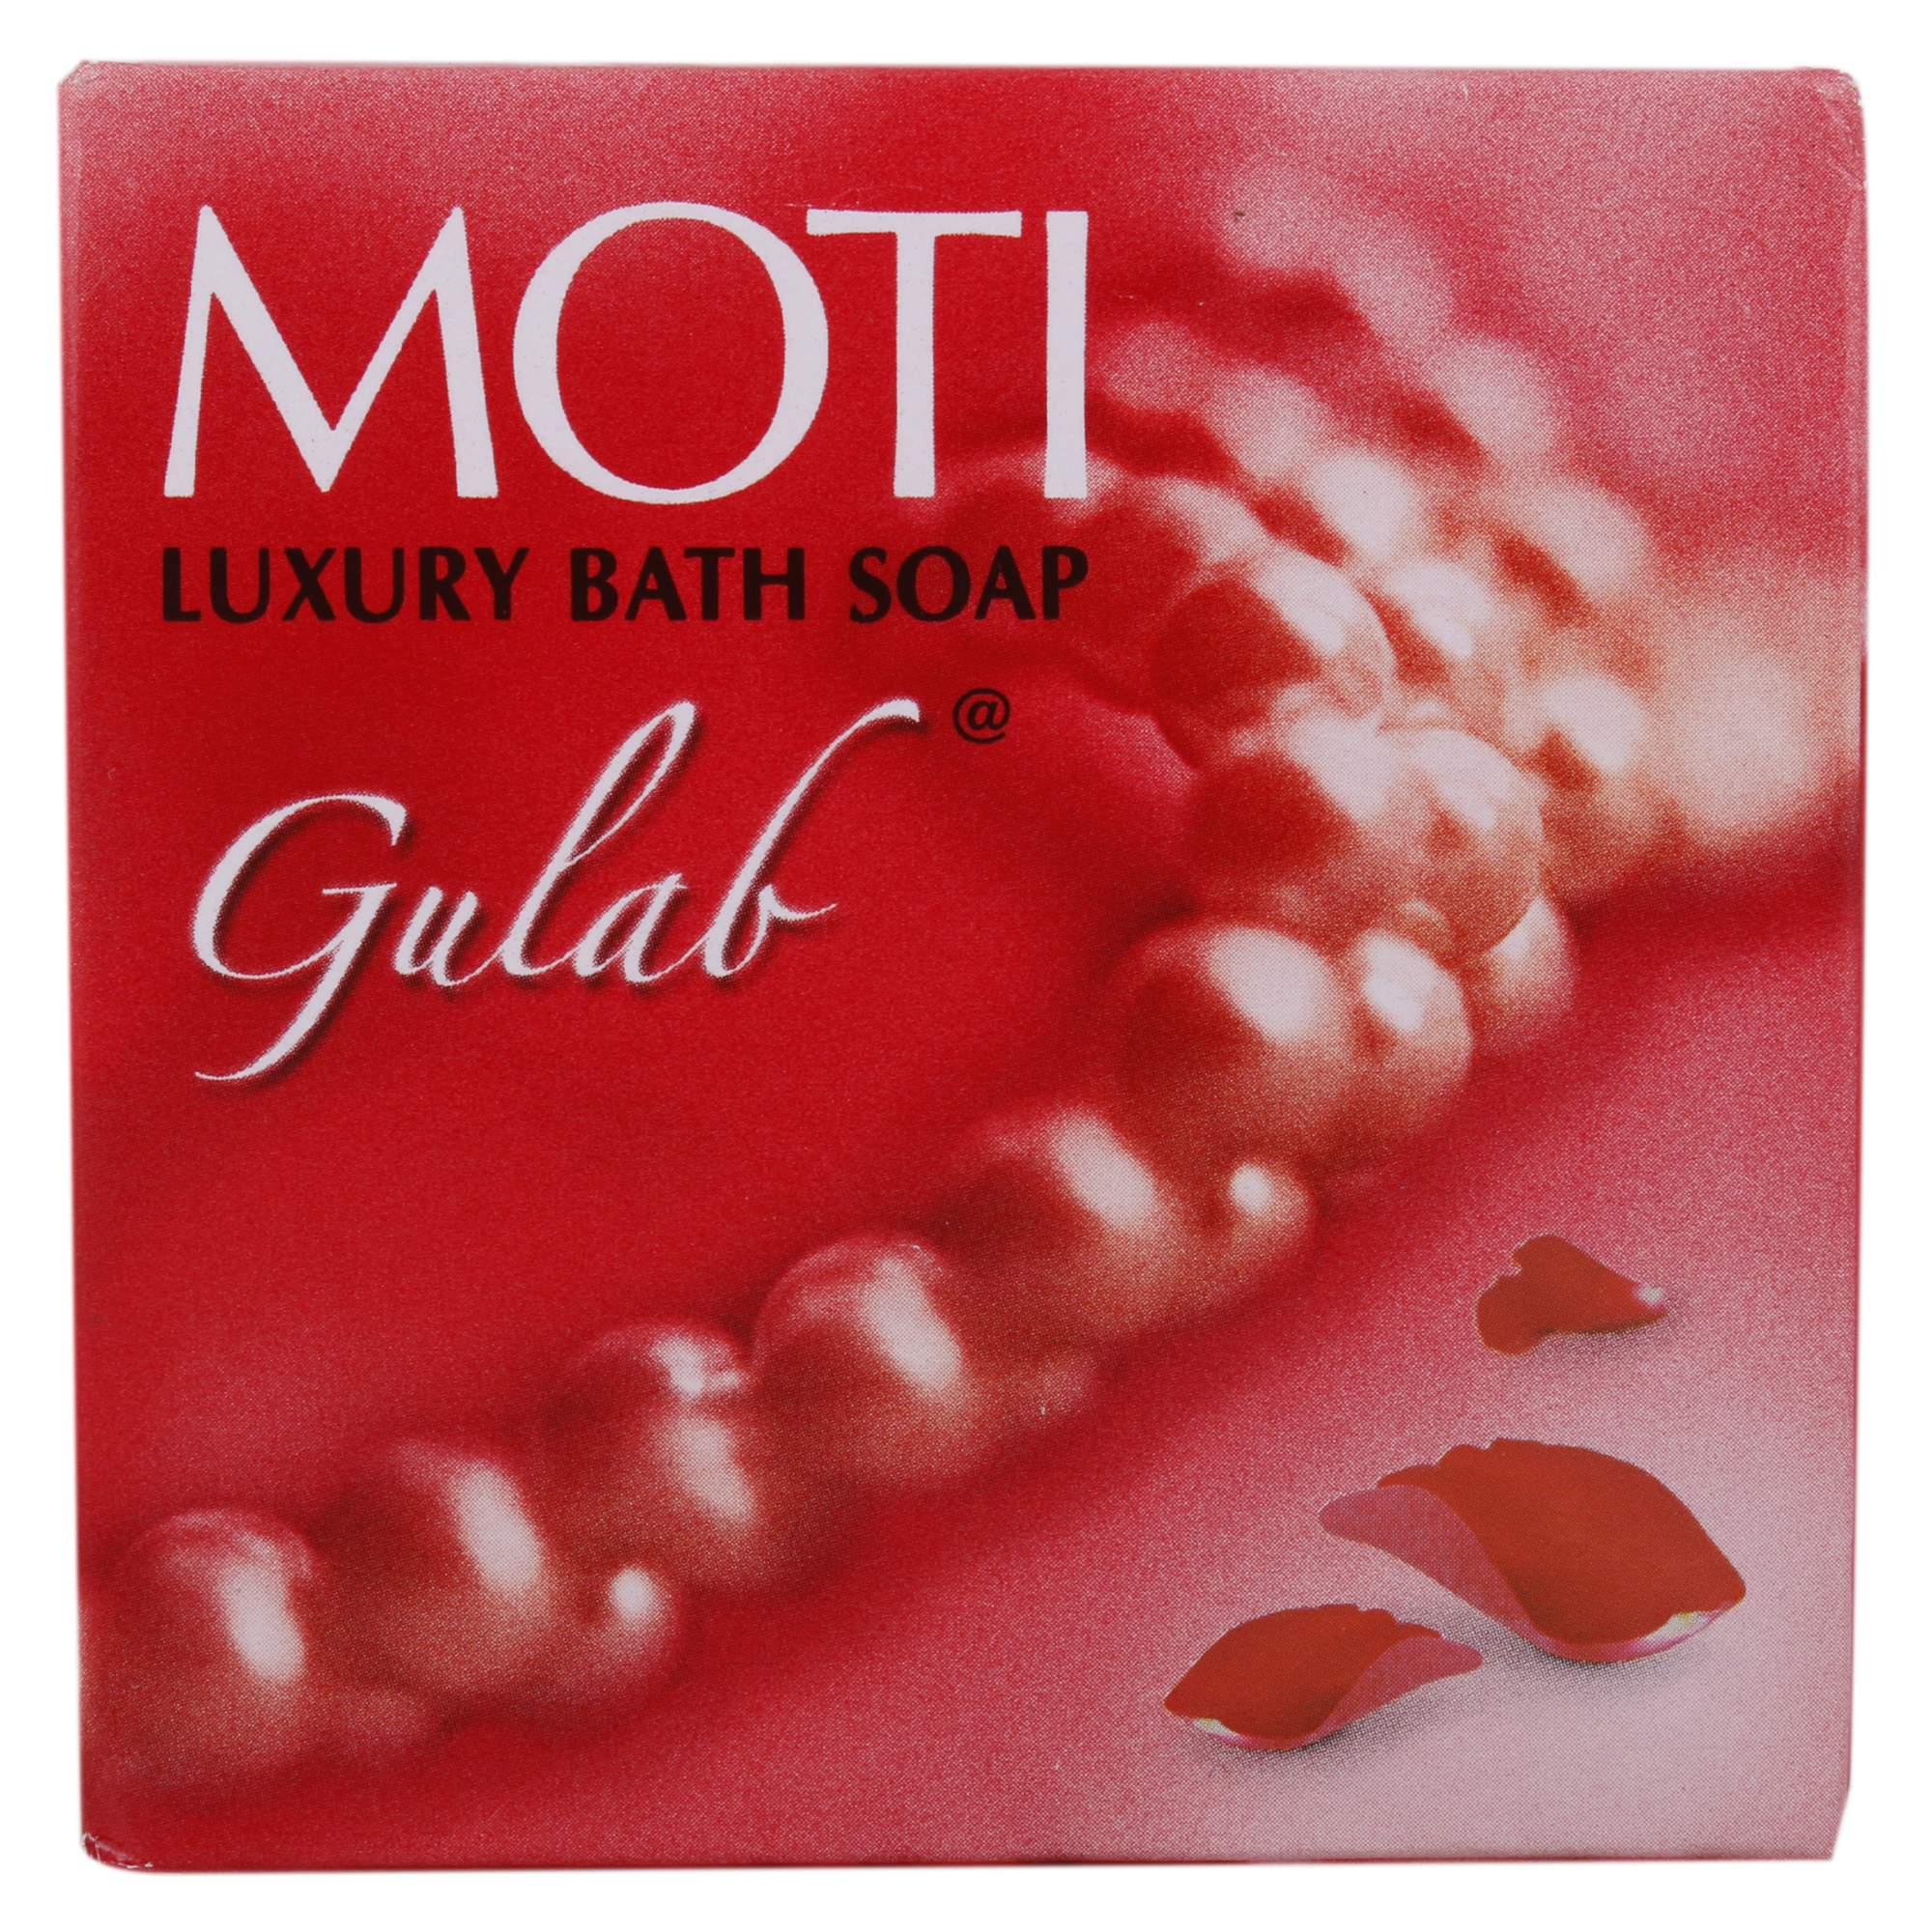 Moti Gulab Luxury Bath Soap 150gm